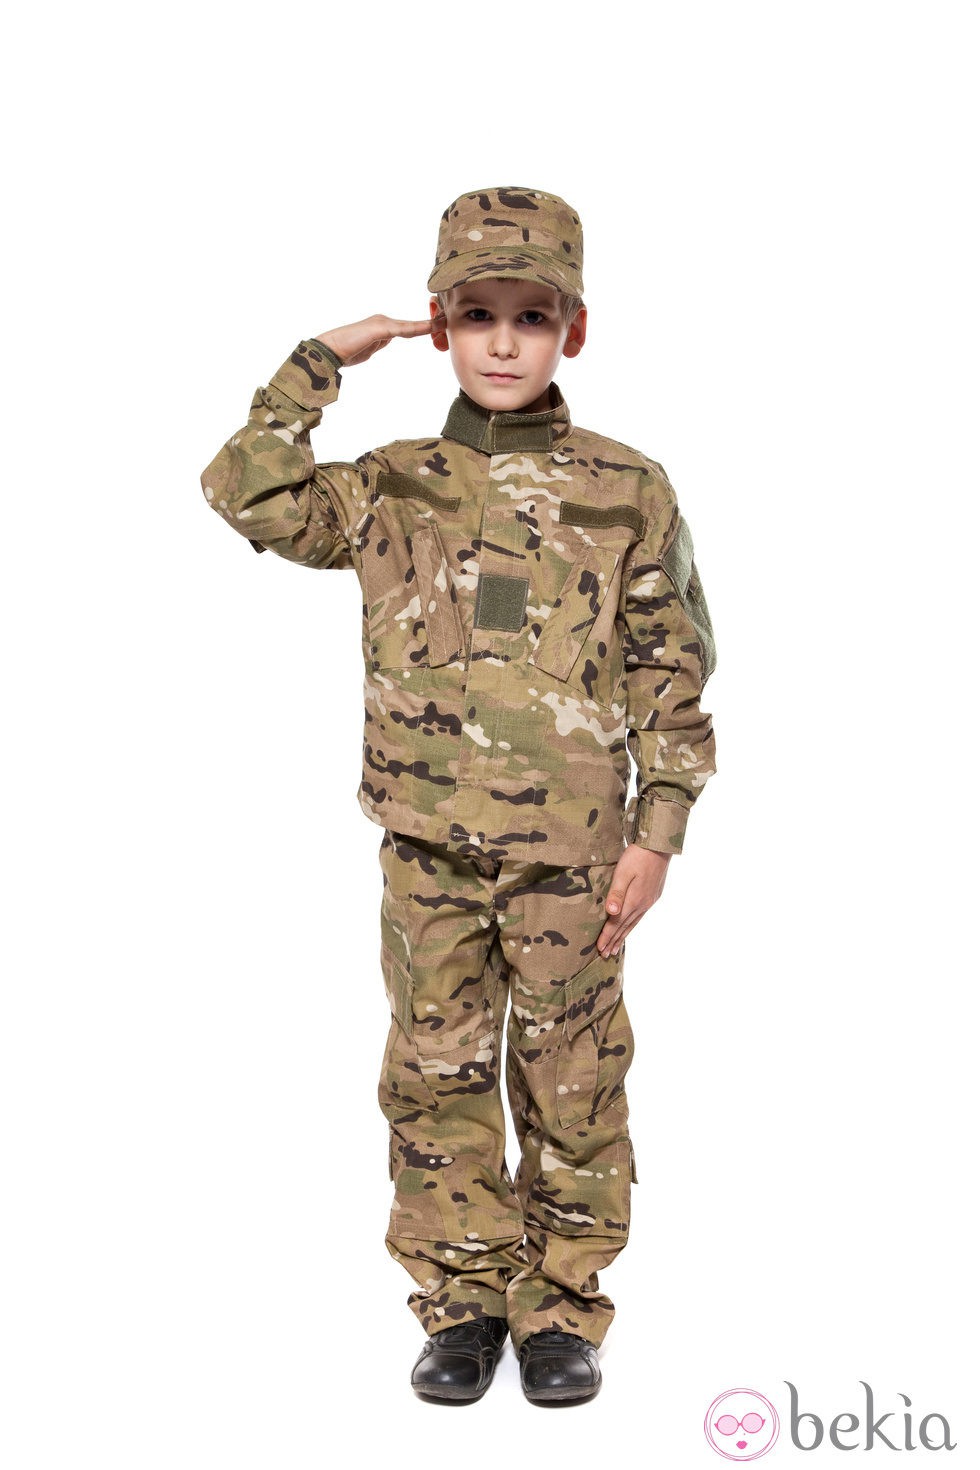 Resultado de imagen de disfraz militar niño